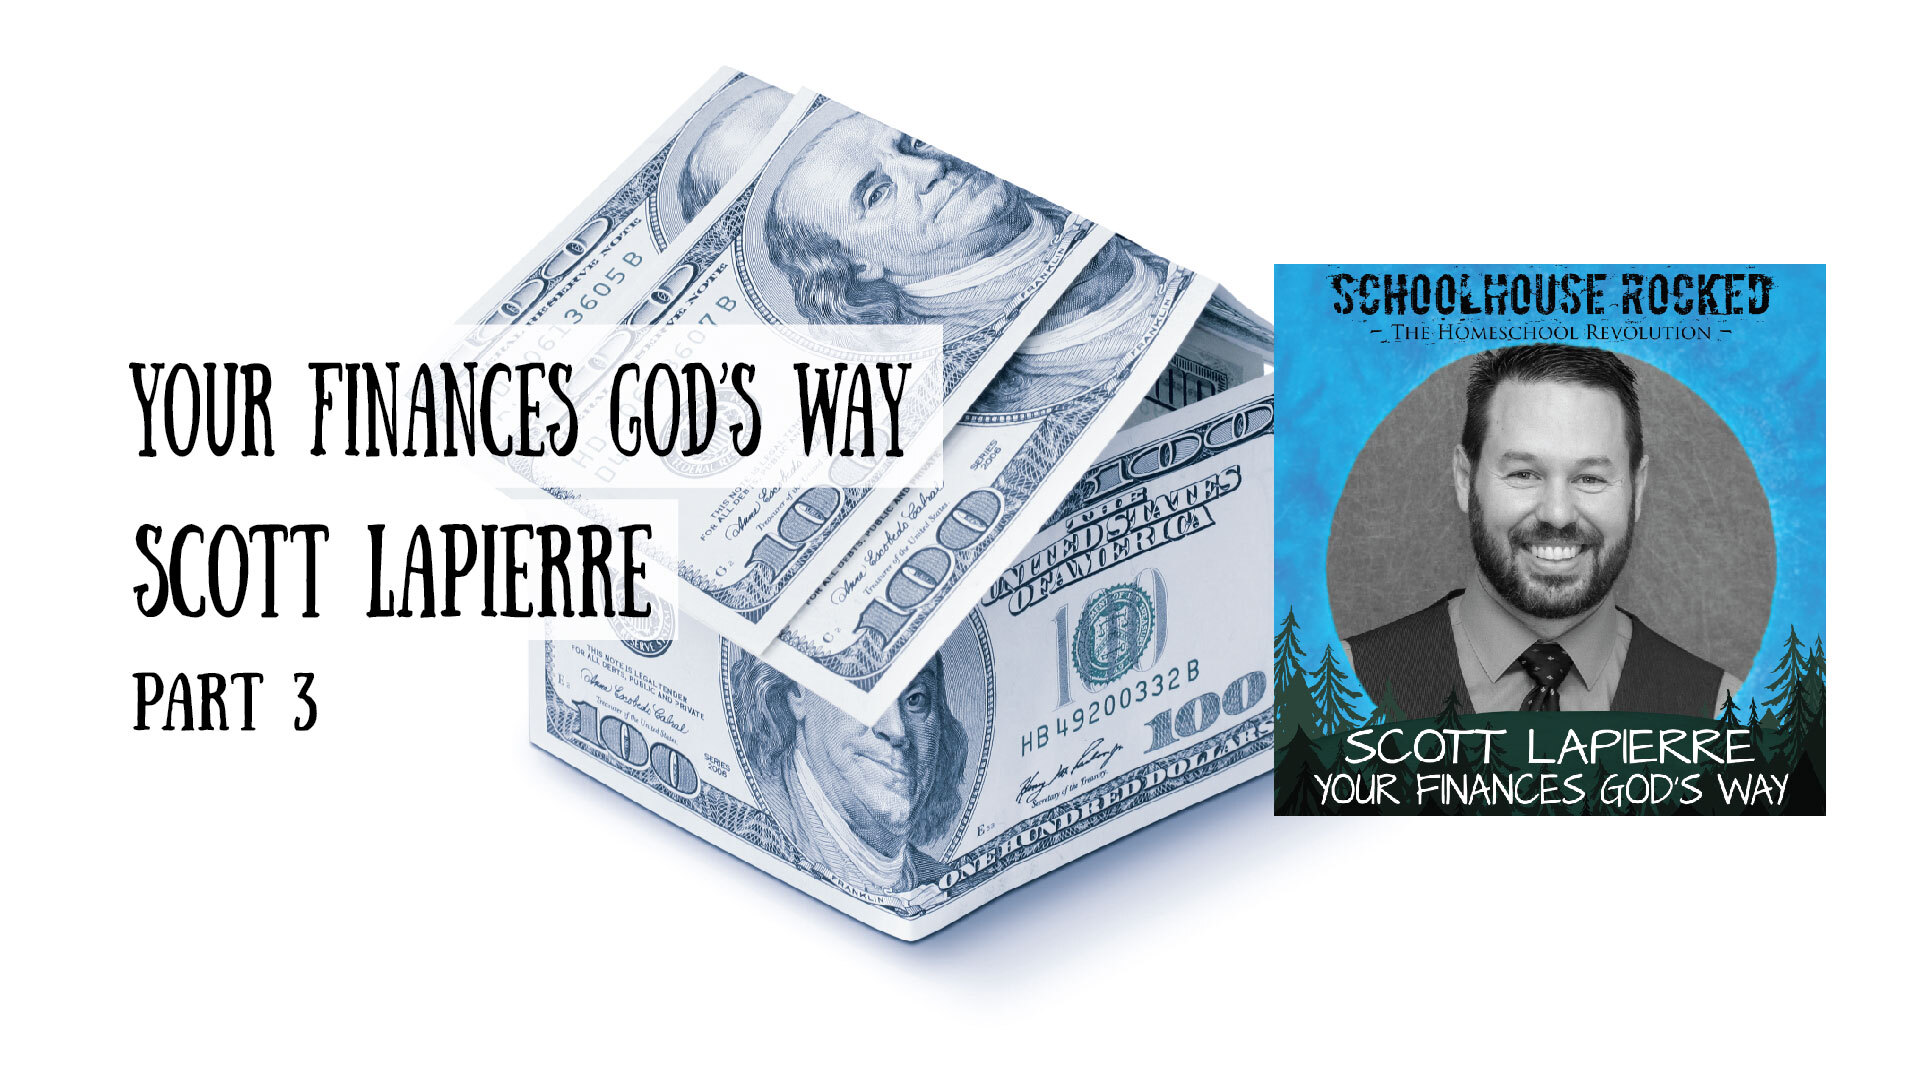 Scott LaPierre - Your Finances God's Way